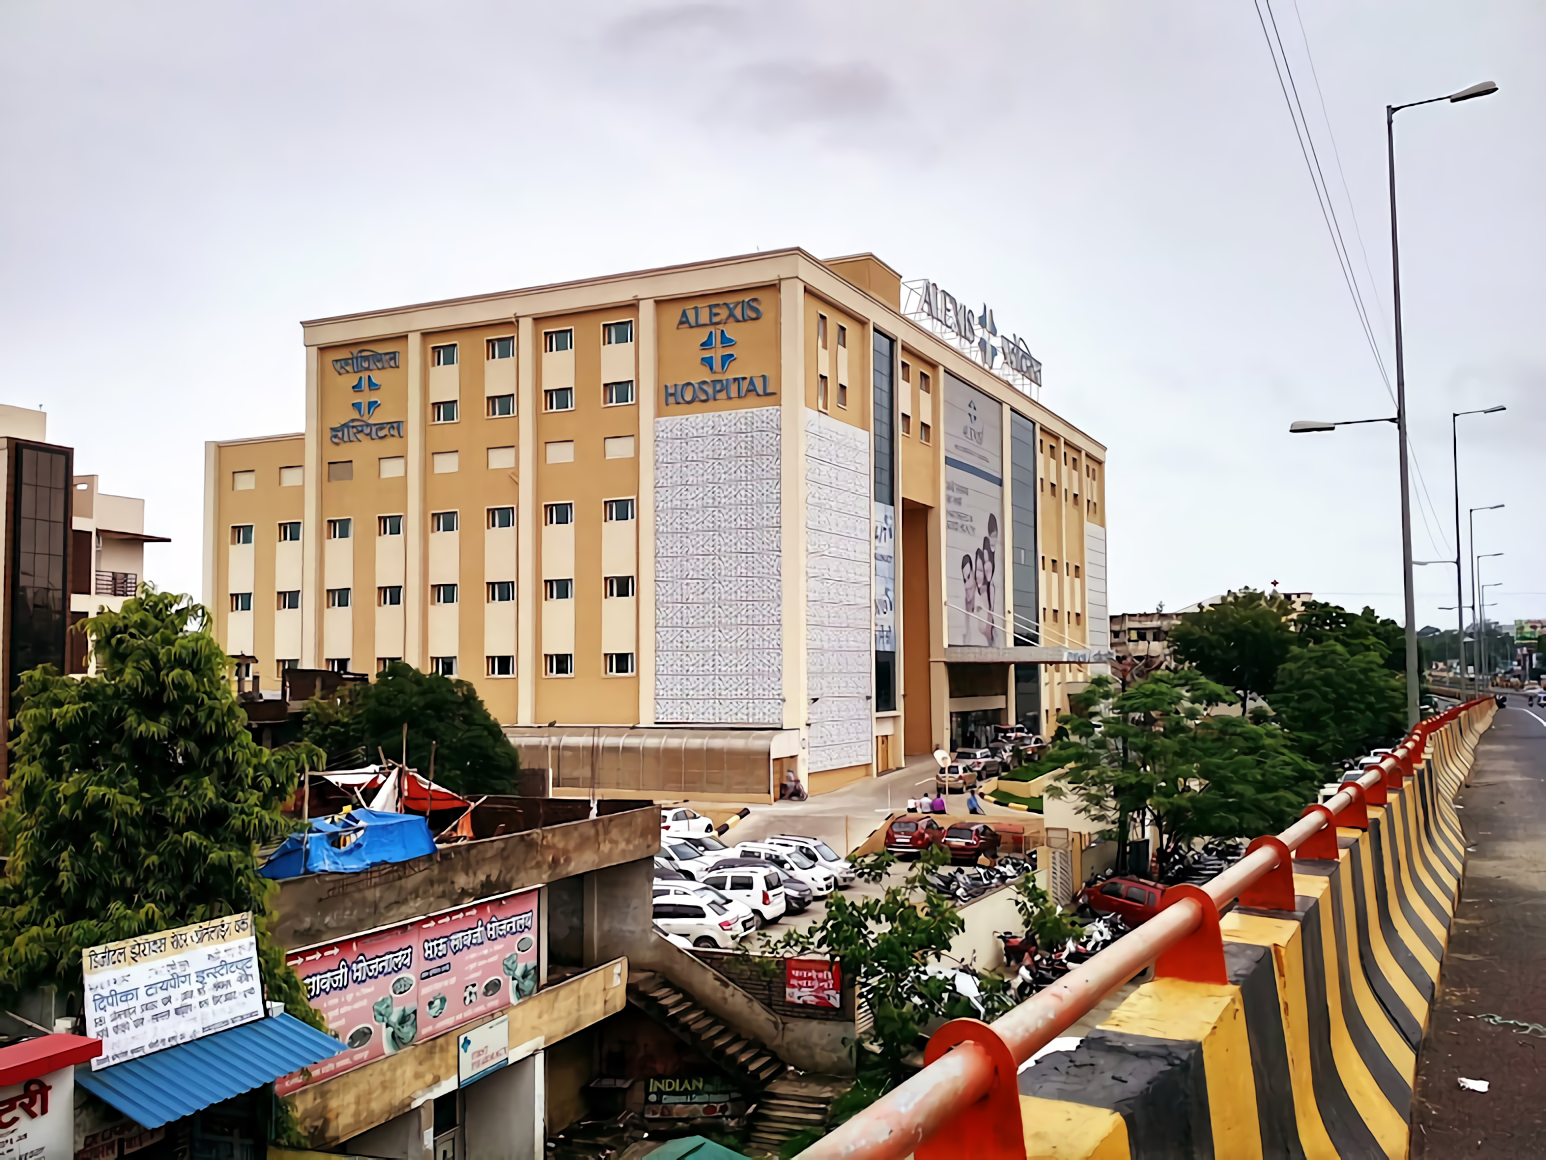 Alexis Multispecialty Hospital